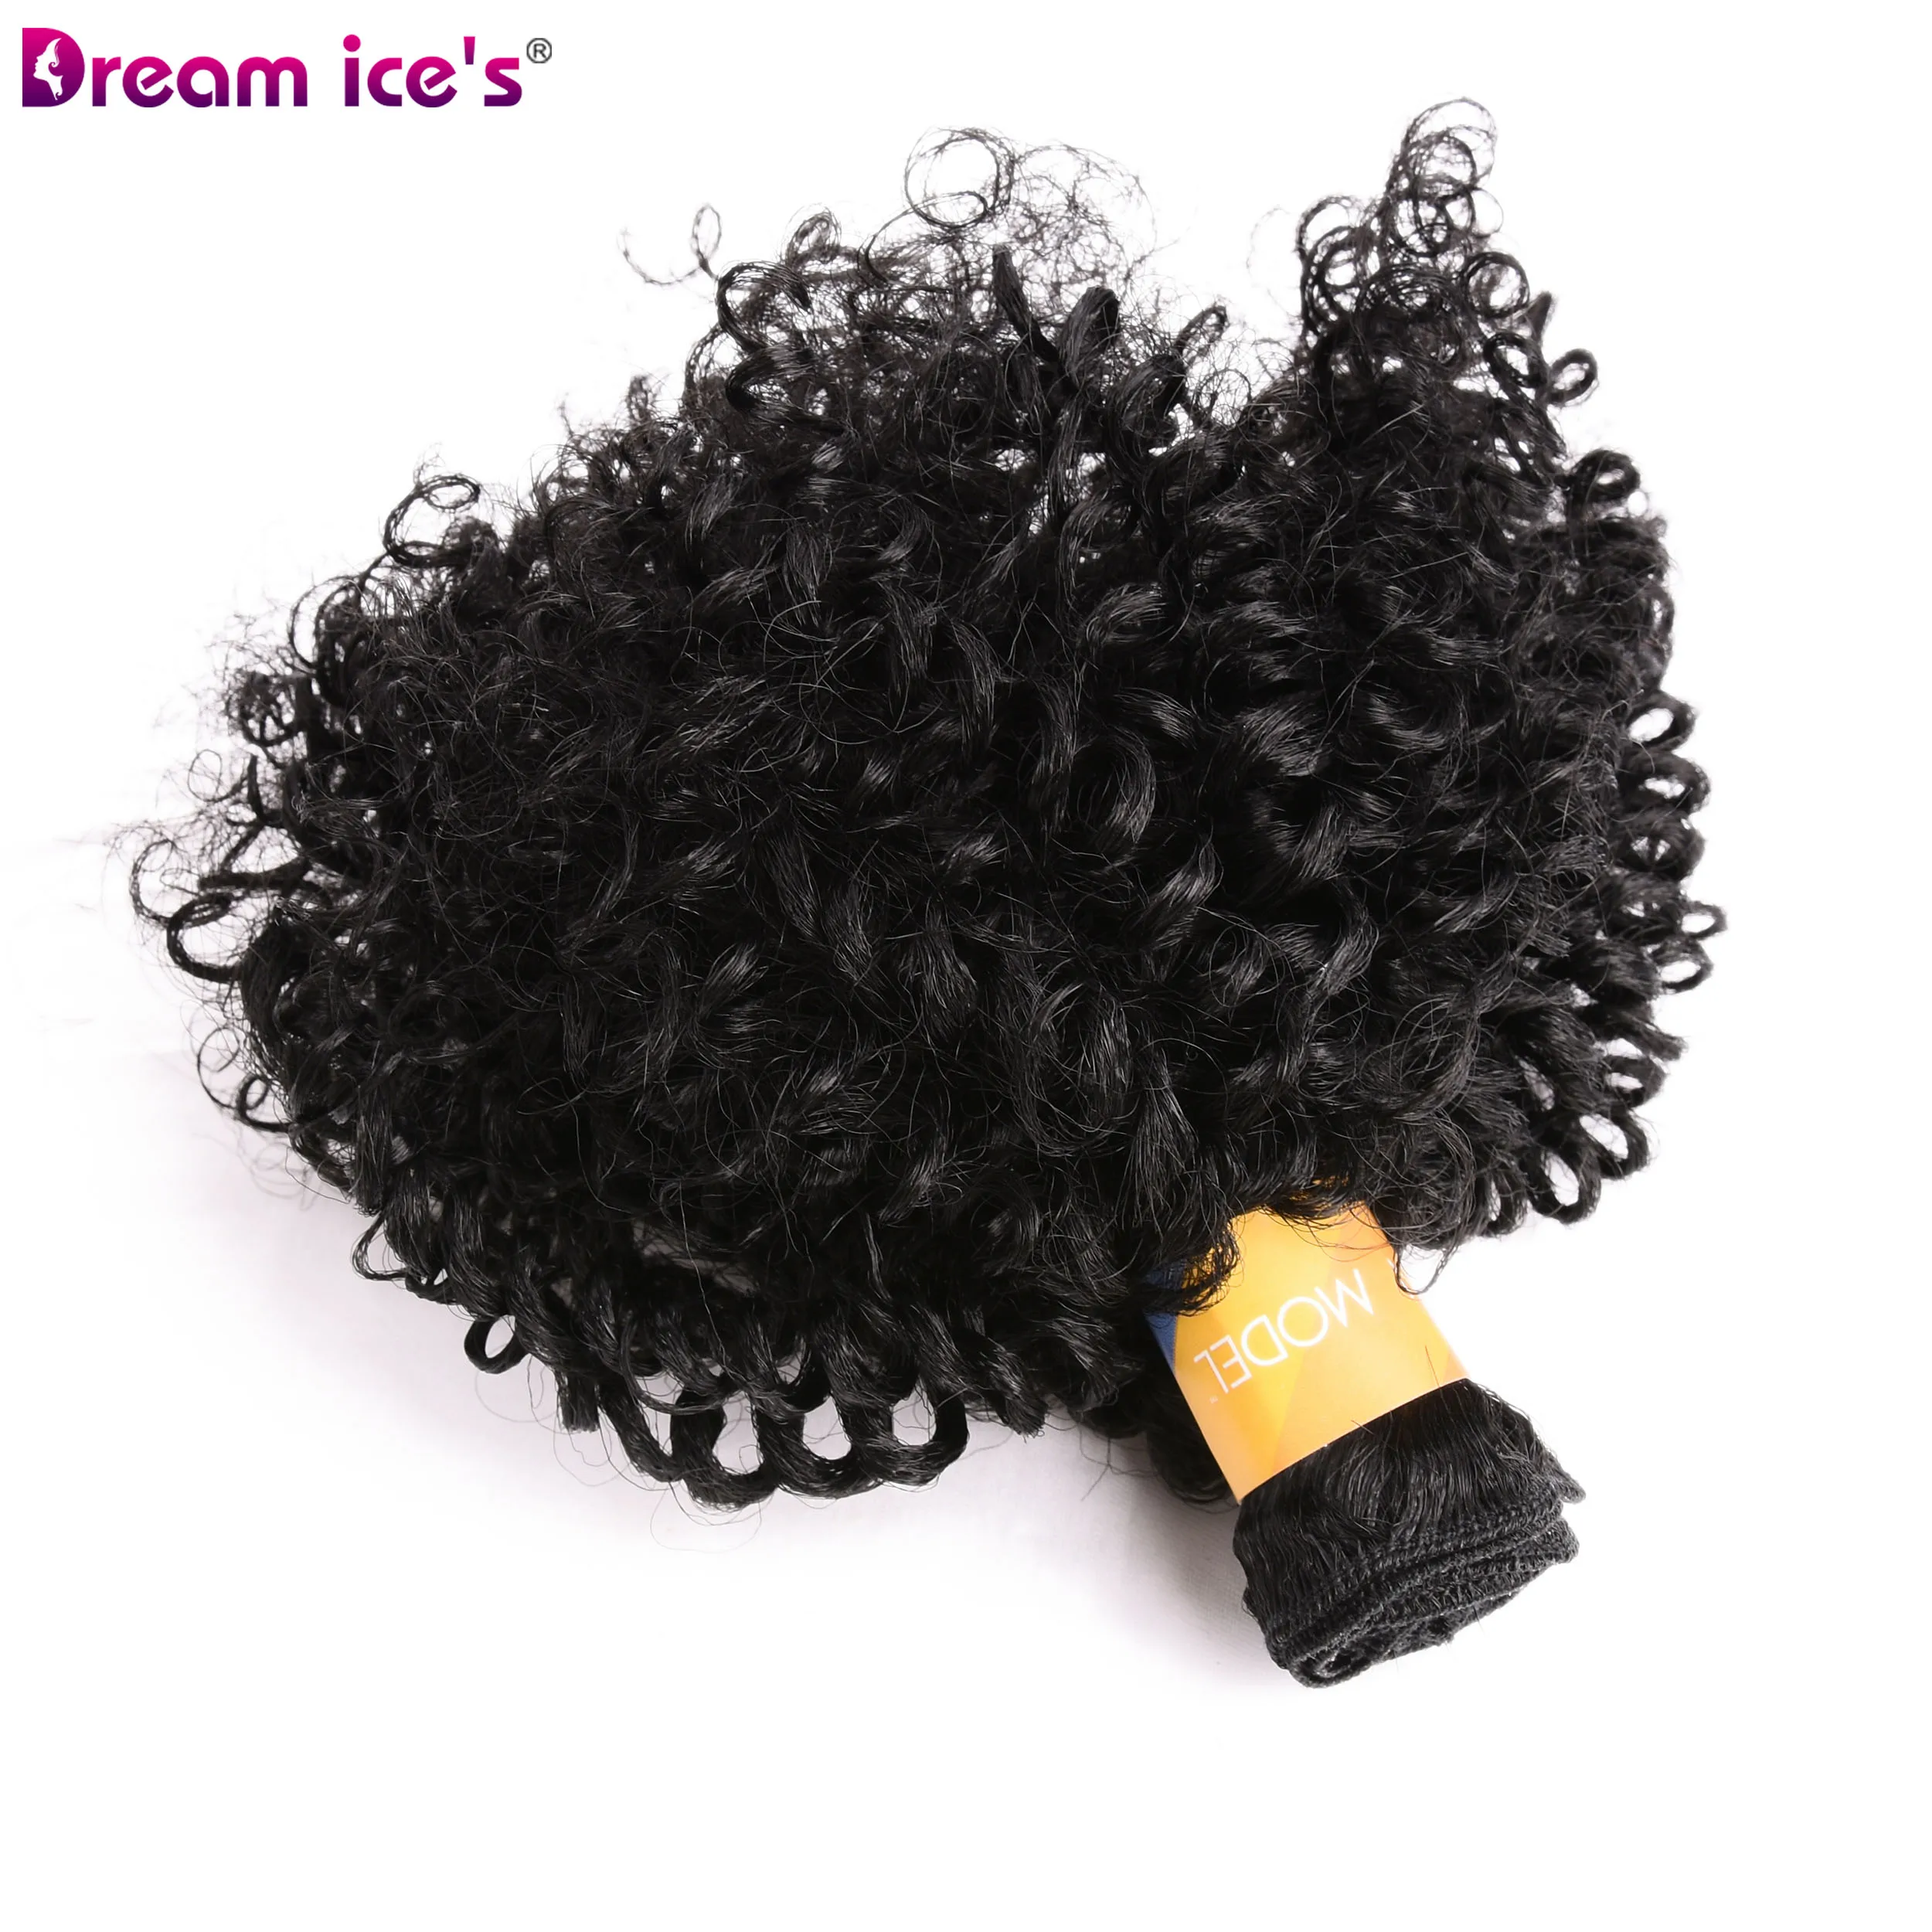 АФРО Синтетические кудрявые волосы пряди Термостойкие волосы для наращивания с двойным плетением для женщин Dream Ice's 6 шт./лот